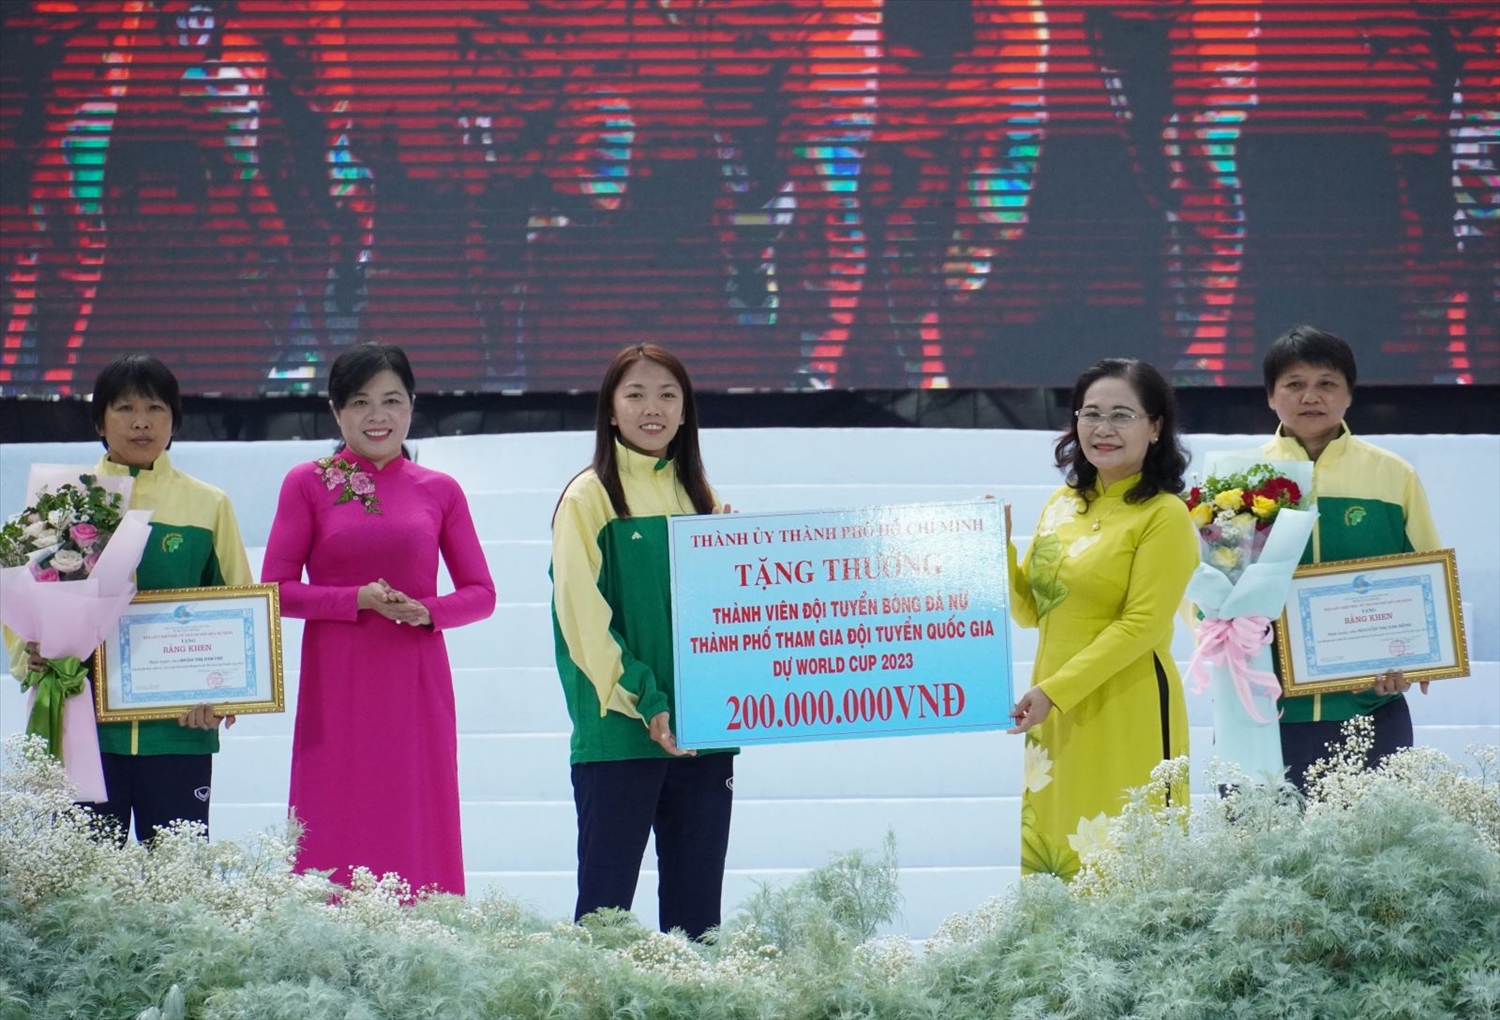 Bà Nguyễn Thị Lệ, Chủ tịch HĐND TP Hồ Chí Minh, đại diện Thường trực Thành ủy trao thưởng đột xuất cho đội bóng đá nữ Thành phố Hồ Chí Minh.